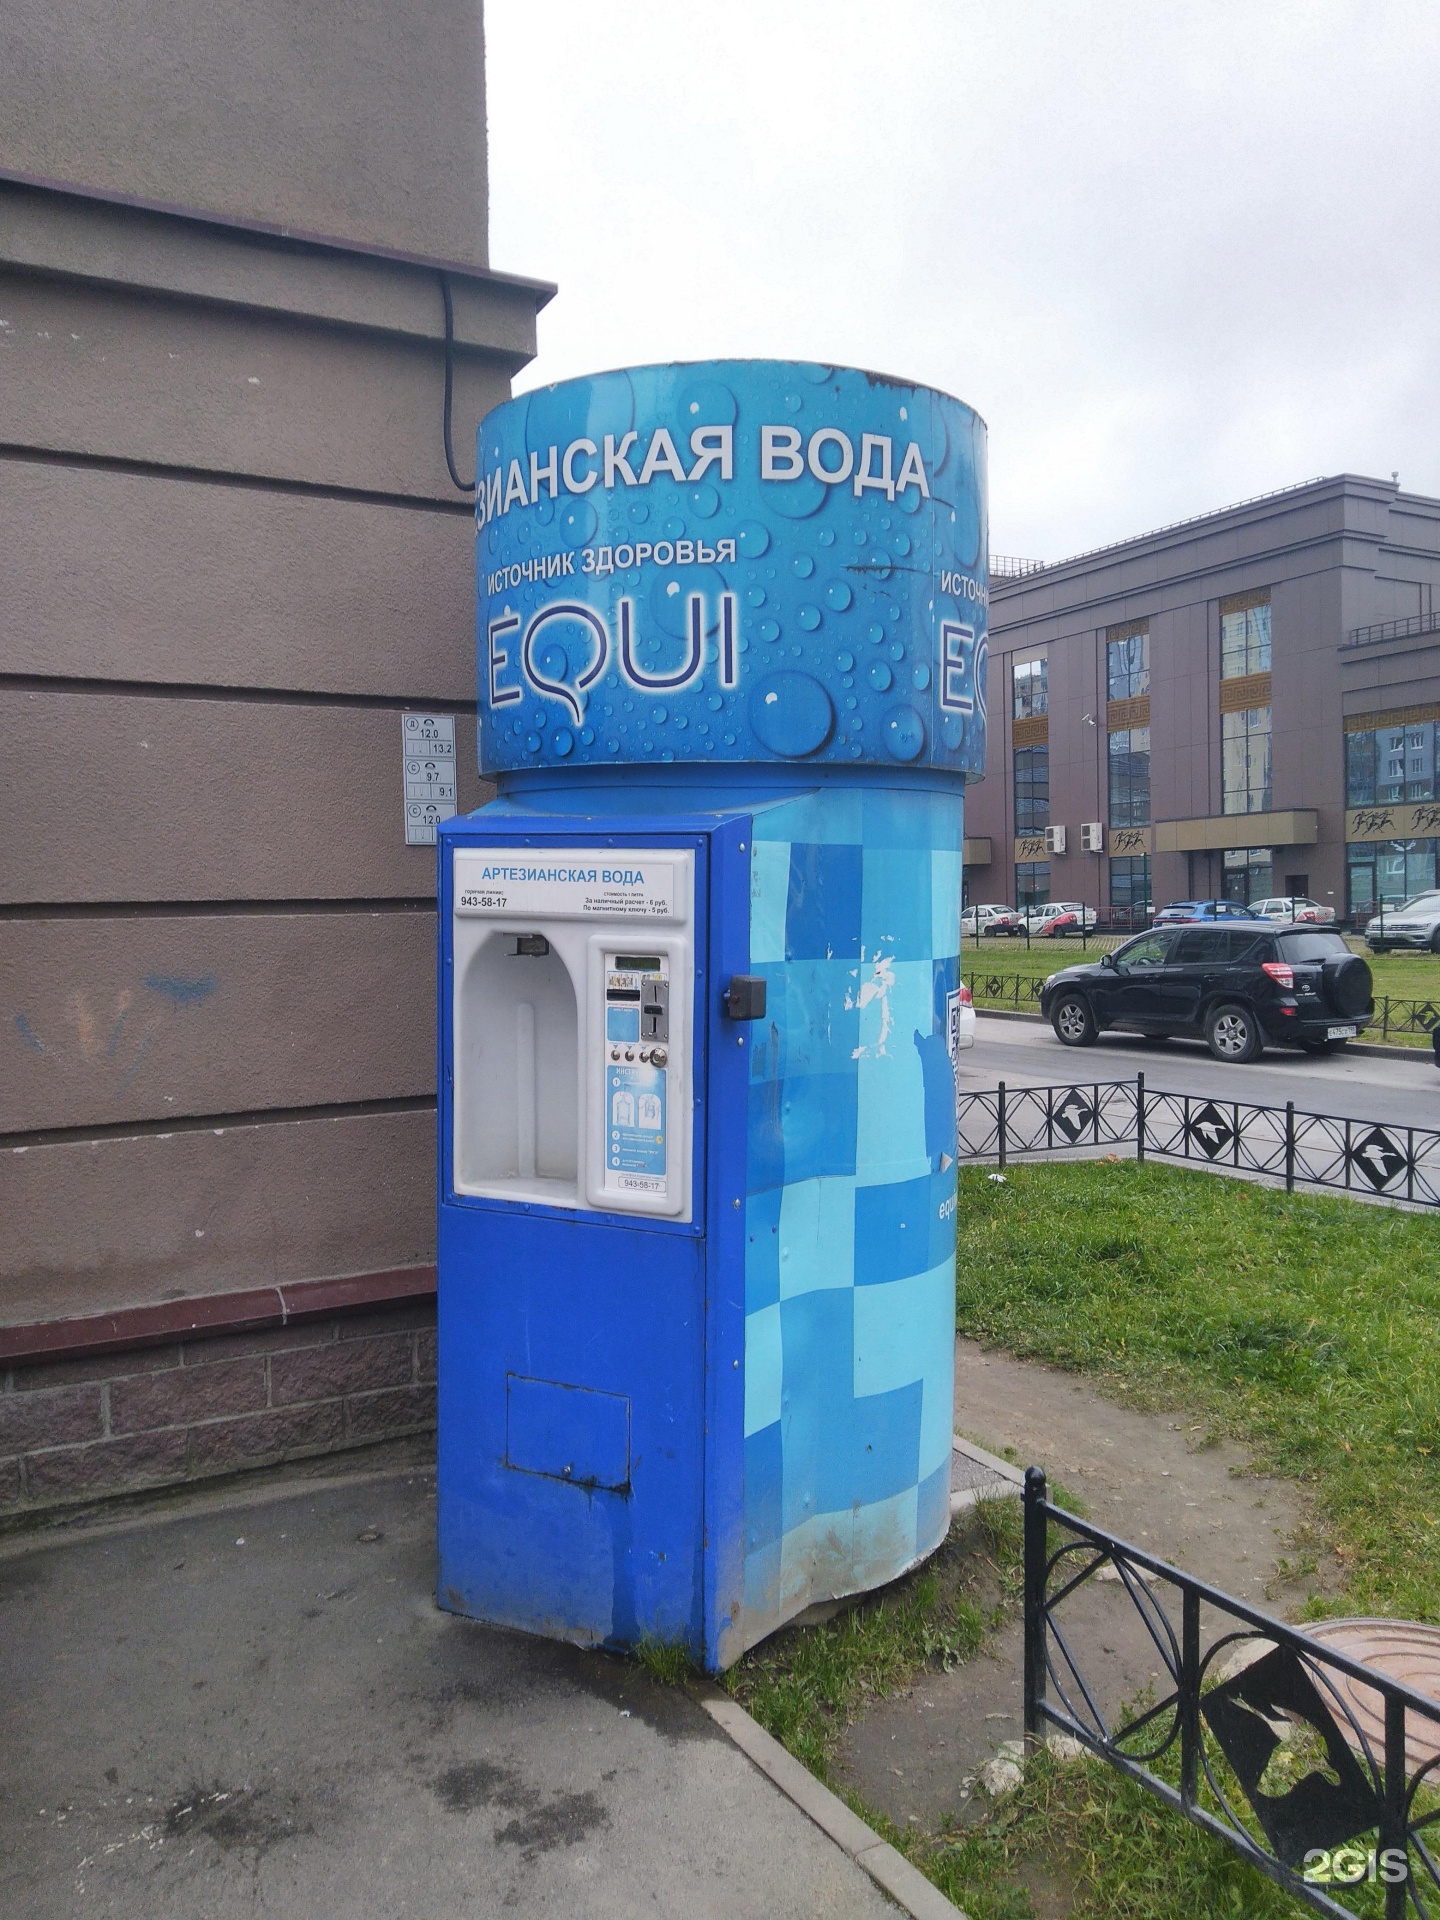 Купить воду в спб с доставкой. Автомат по продаже питьевой воды. Ларьки питьевой воды в Питере. Вода Санкт-Петербург 0.2. Автоматы с водой в Питере пить.